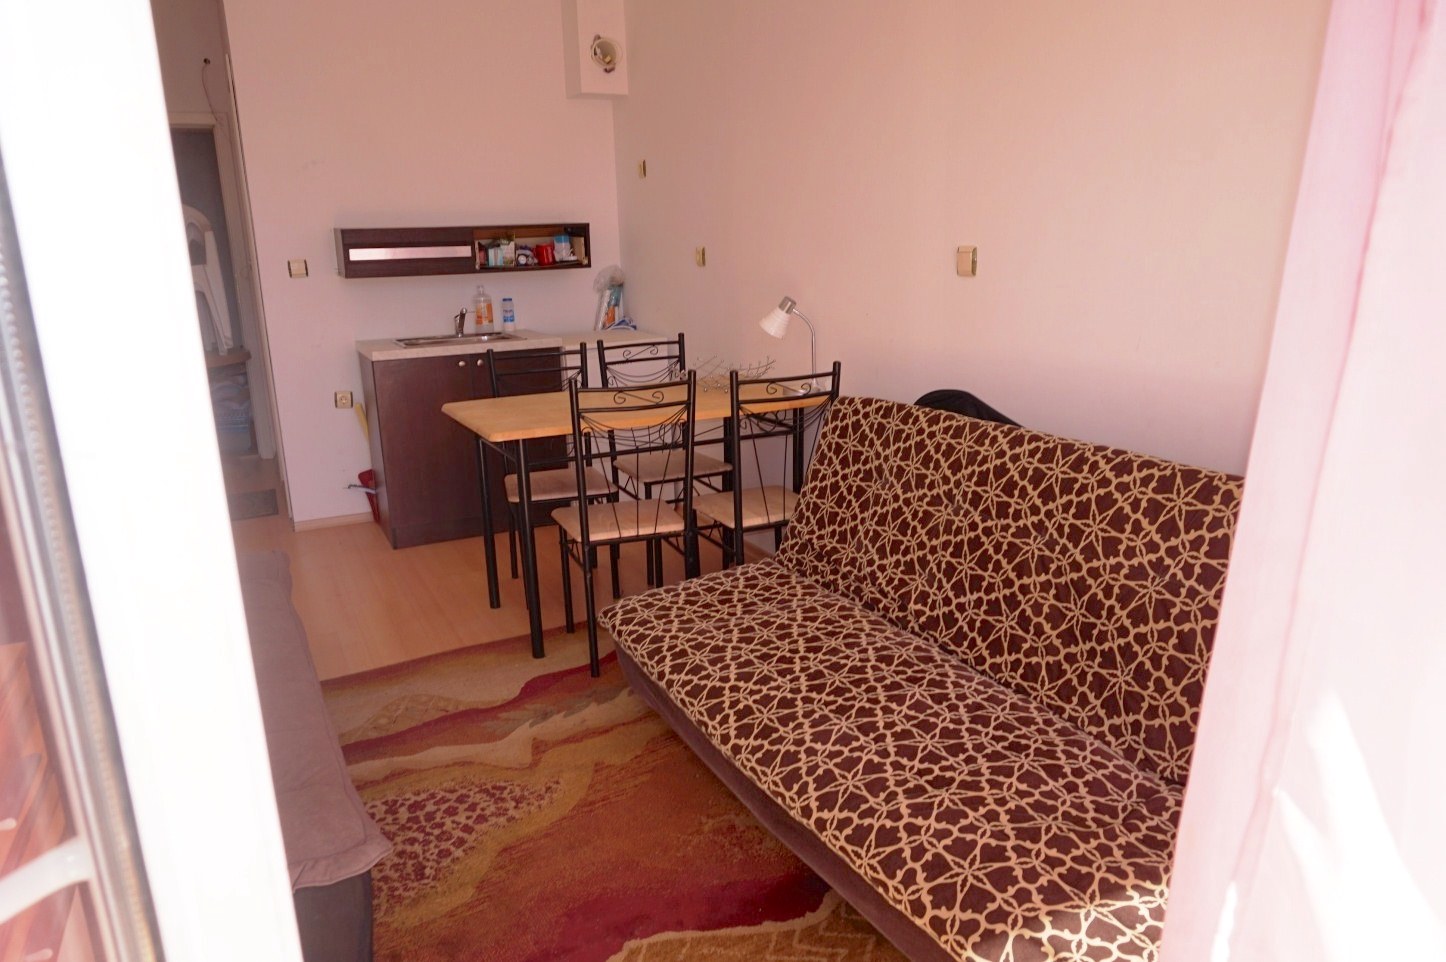 27,76sq.m studio apartment for sale in Bulgaria